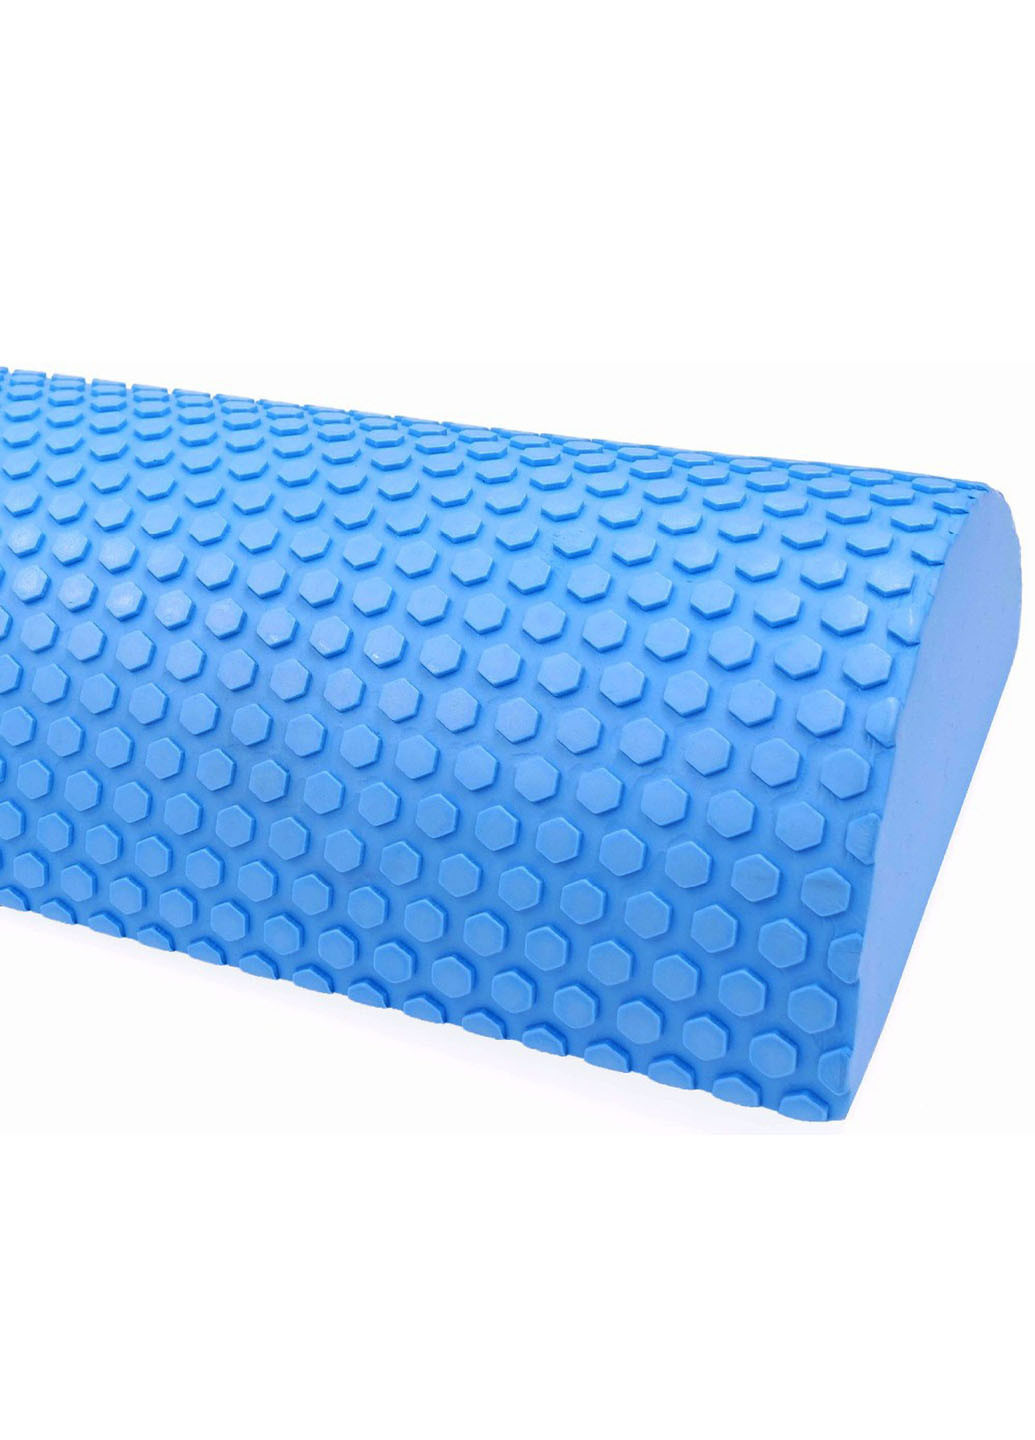 Массажный ролик Foam Roller 30 см синий (лёгкий и мягкий валик для йоги, массажа всего тела: рук, ног, спины, шеи) EasyFit (237657489)